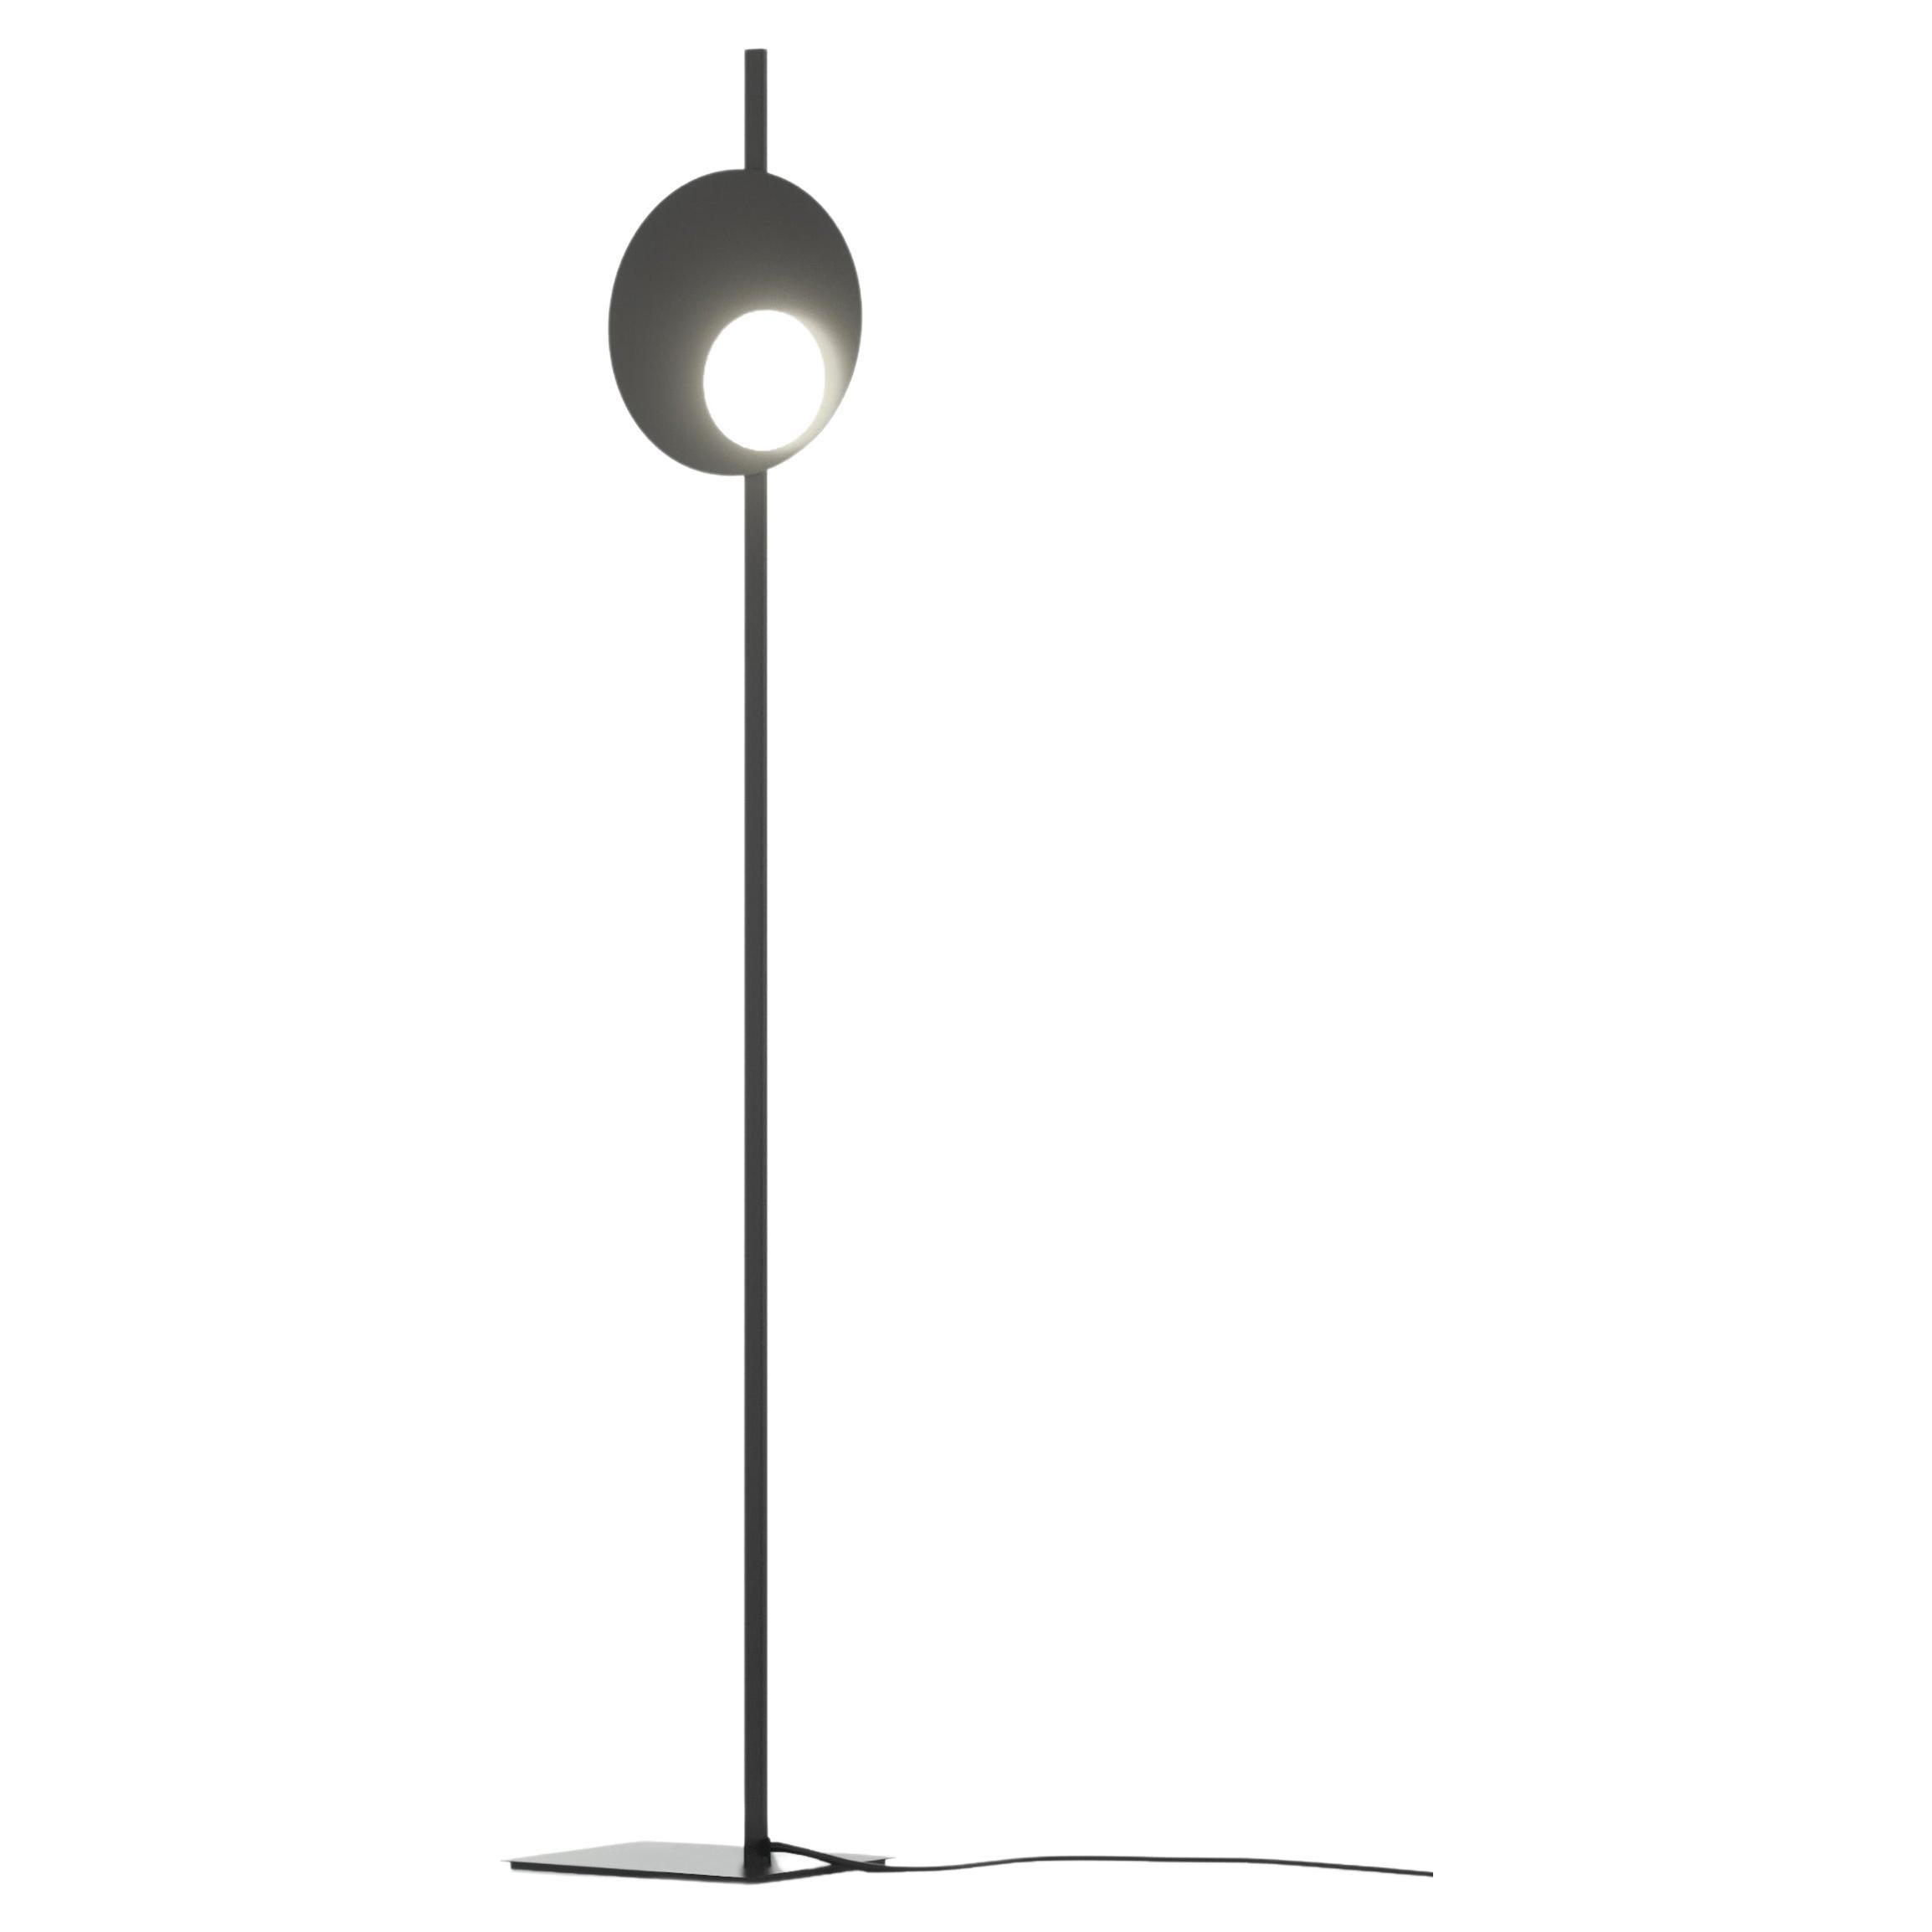 Axolight Kwic 36 Medium Floor Lamp in Intense Black by Robert Cornelisse For Sale